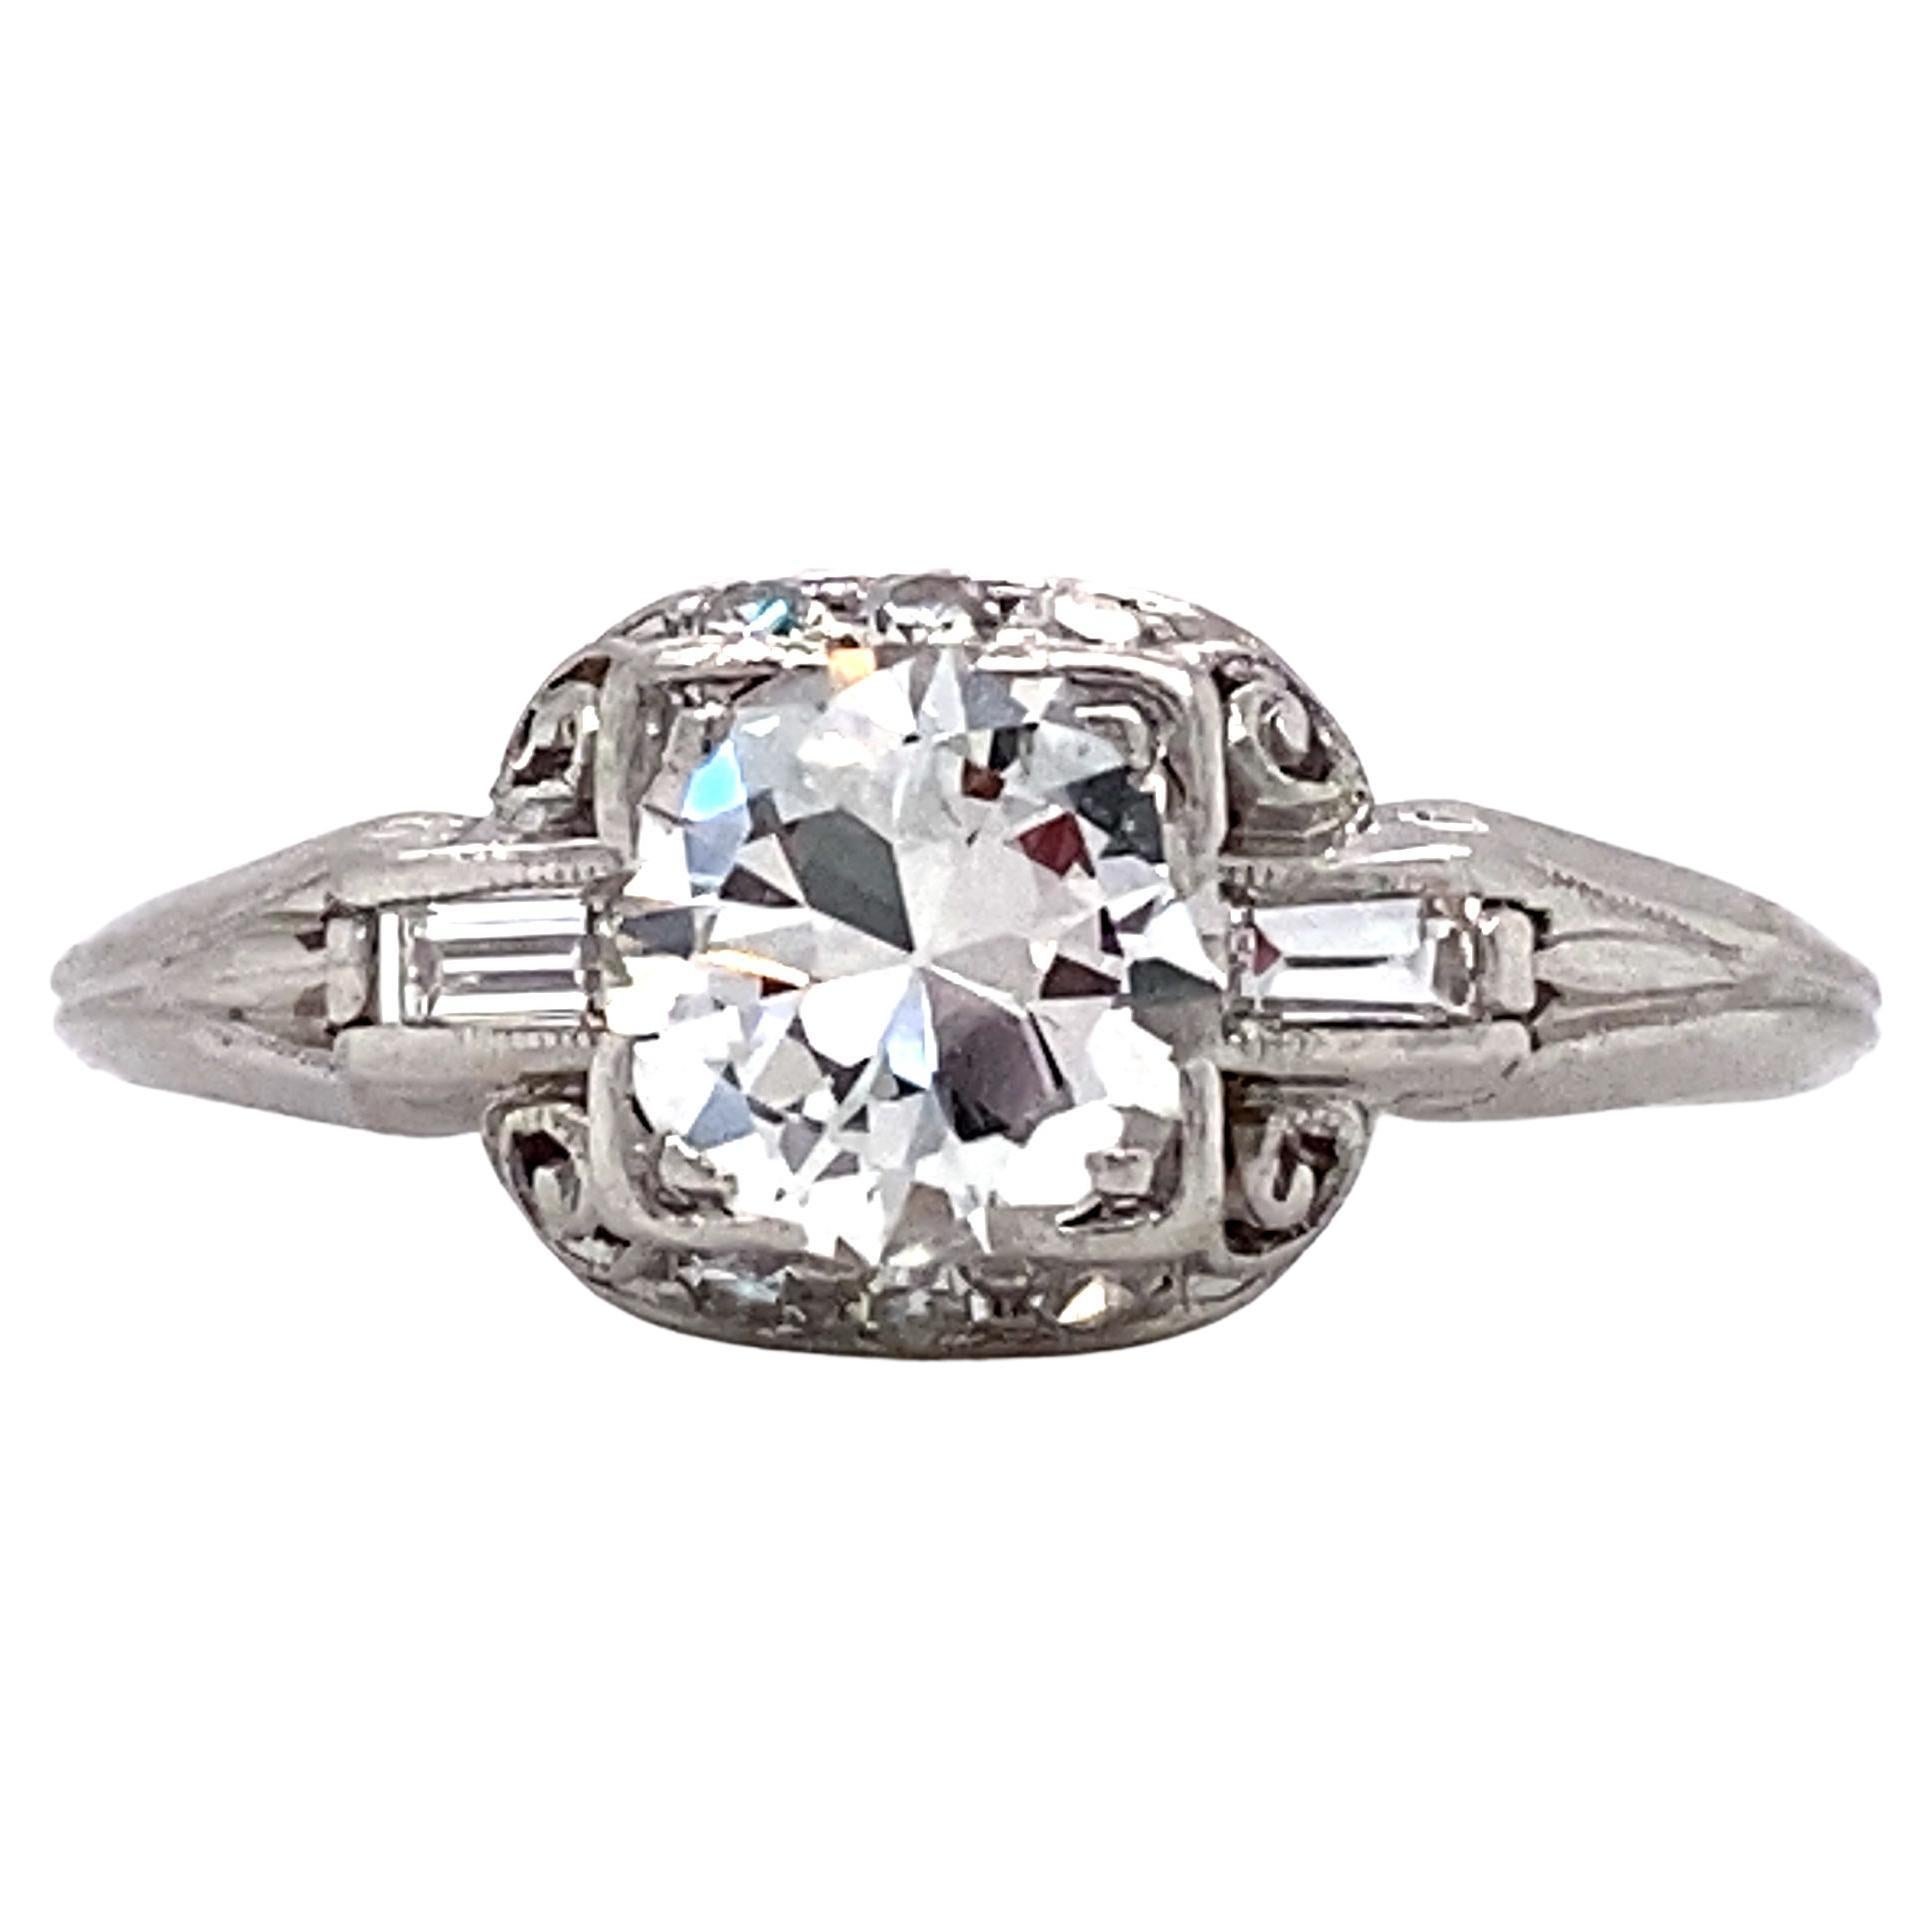 Goldsmith Bros. 1932 0.80 Carat Diamond Engagement Ring in Platinum